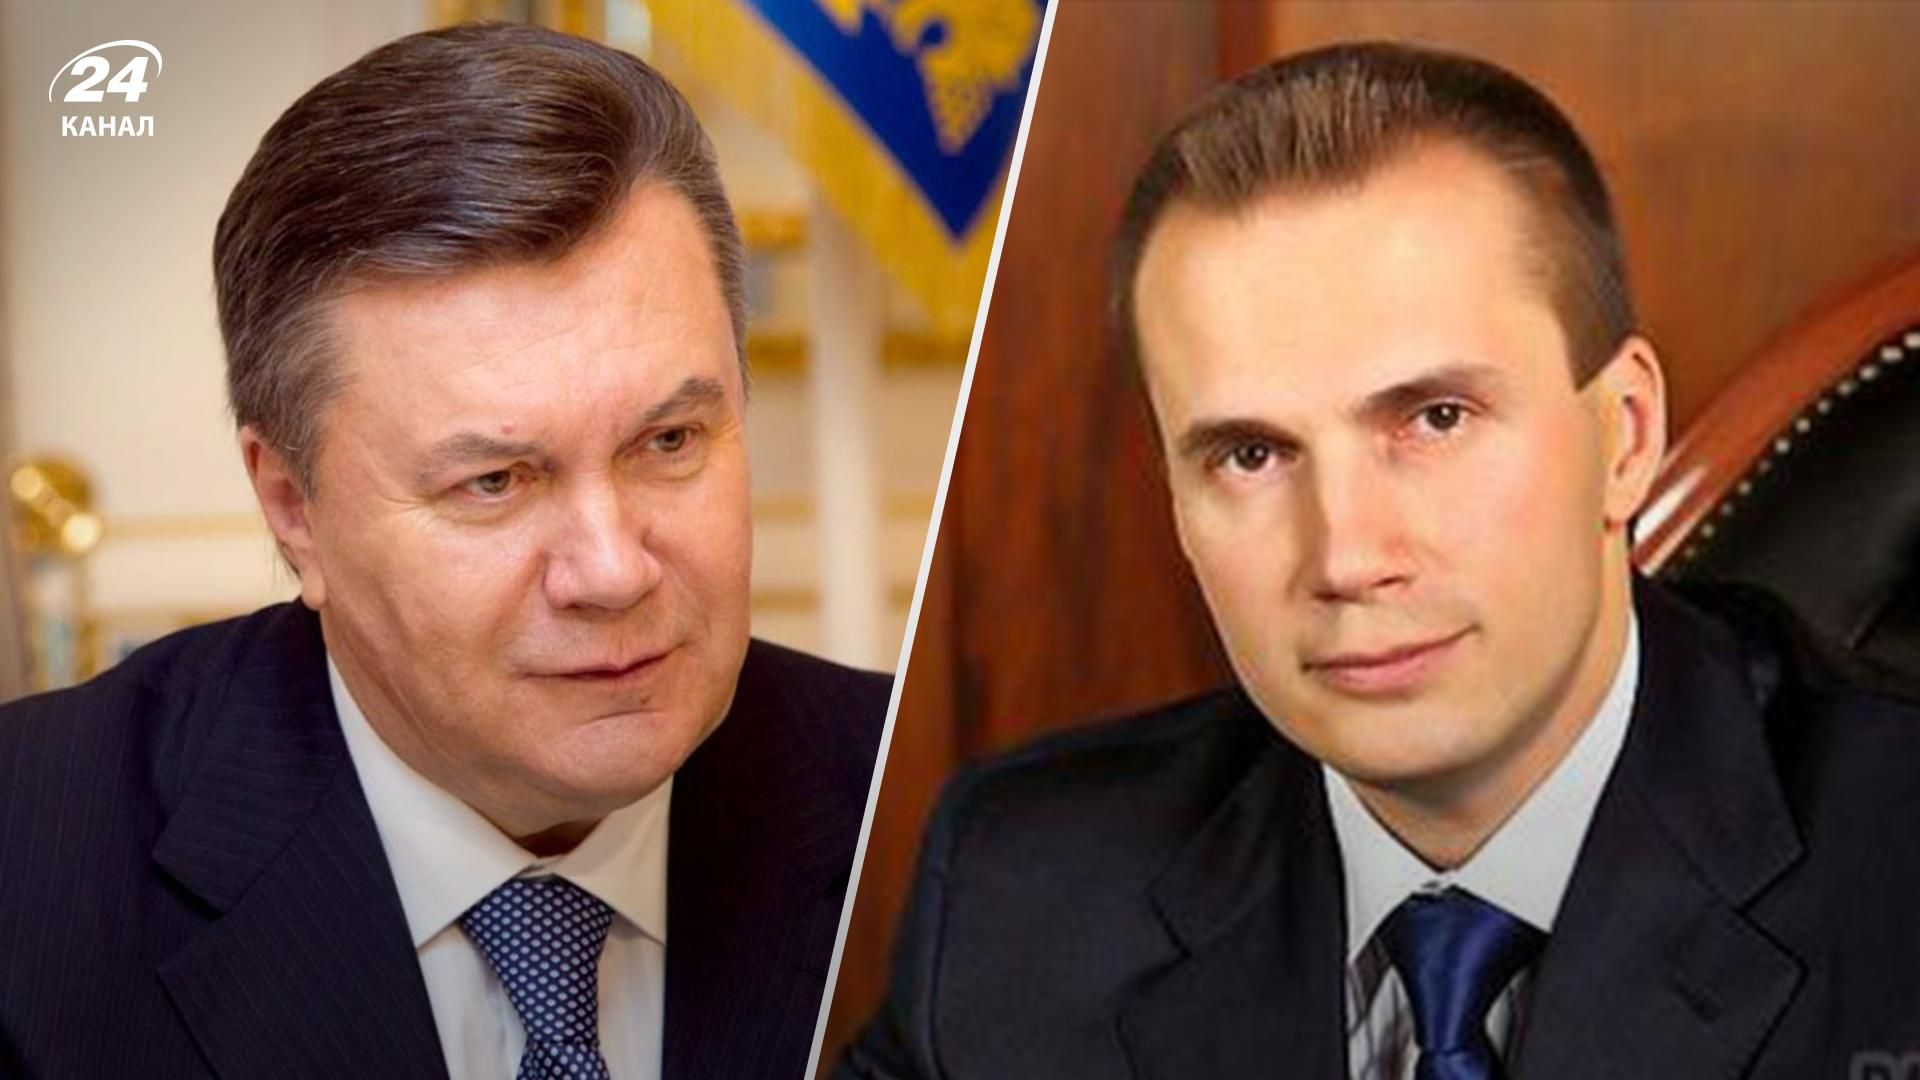 ЕС объявил о новых санкциях против Януковича и его сына Александра - 24 Канал